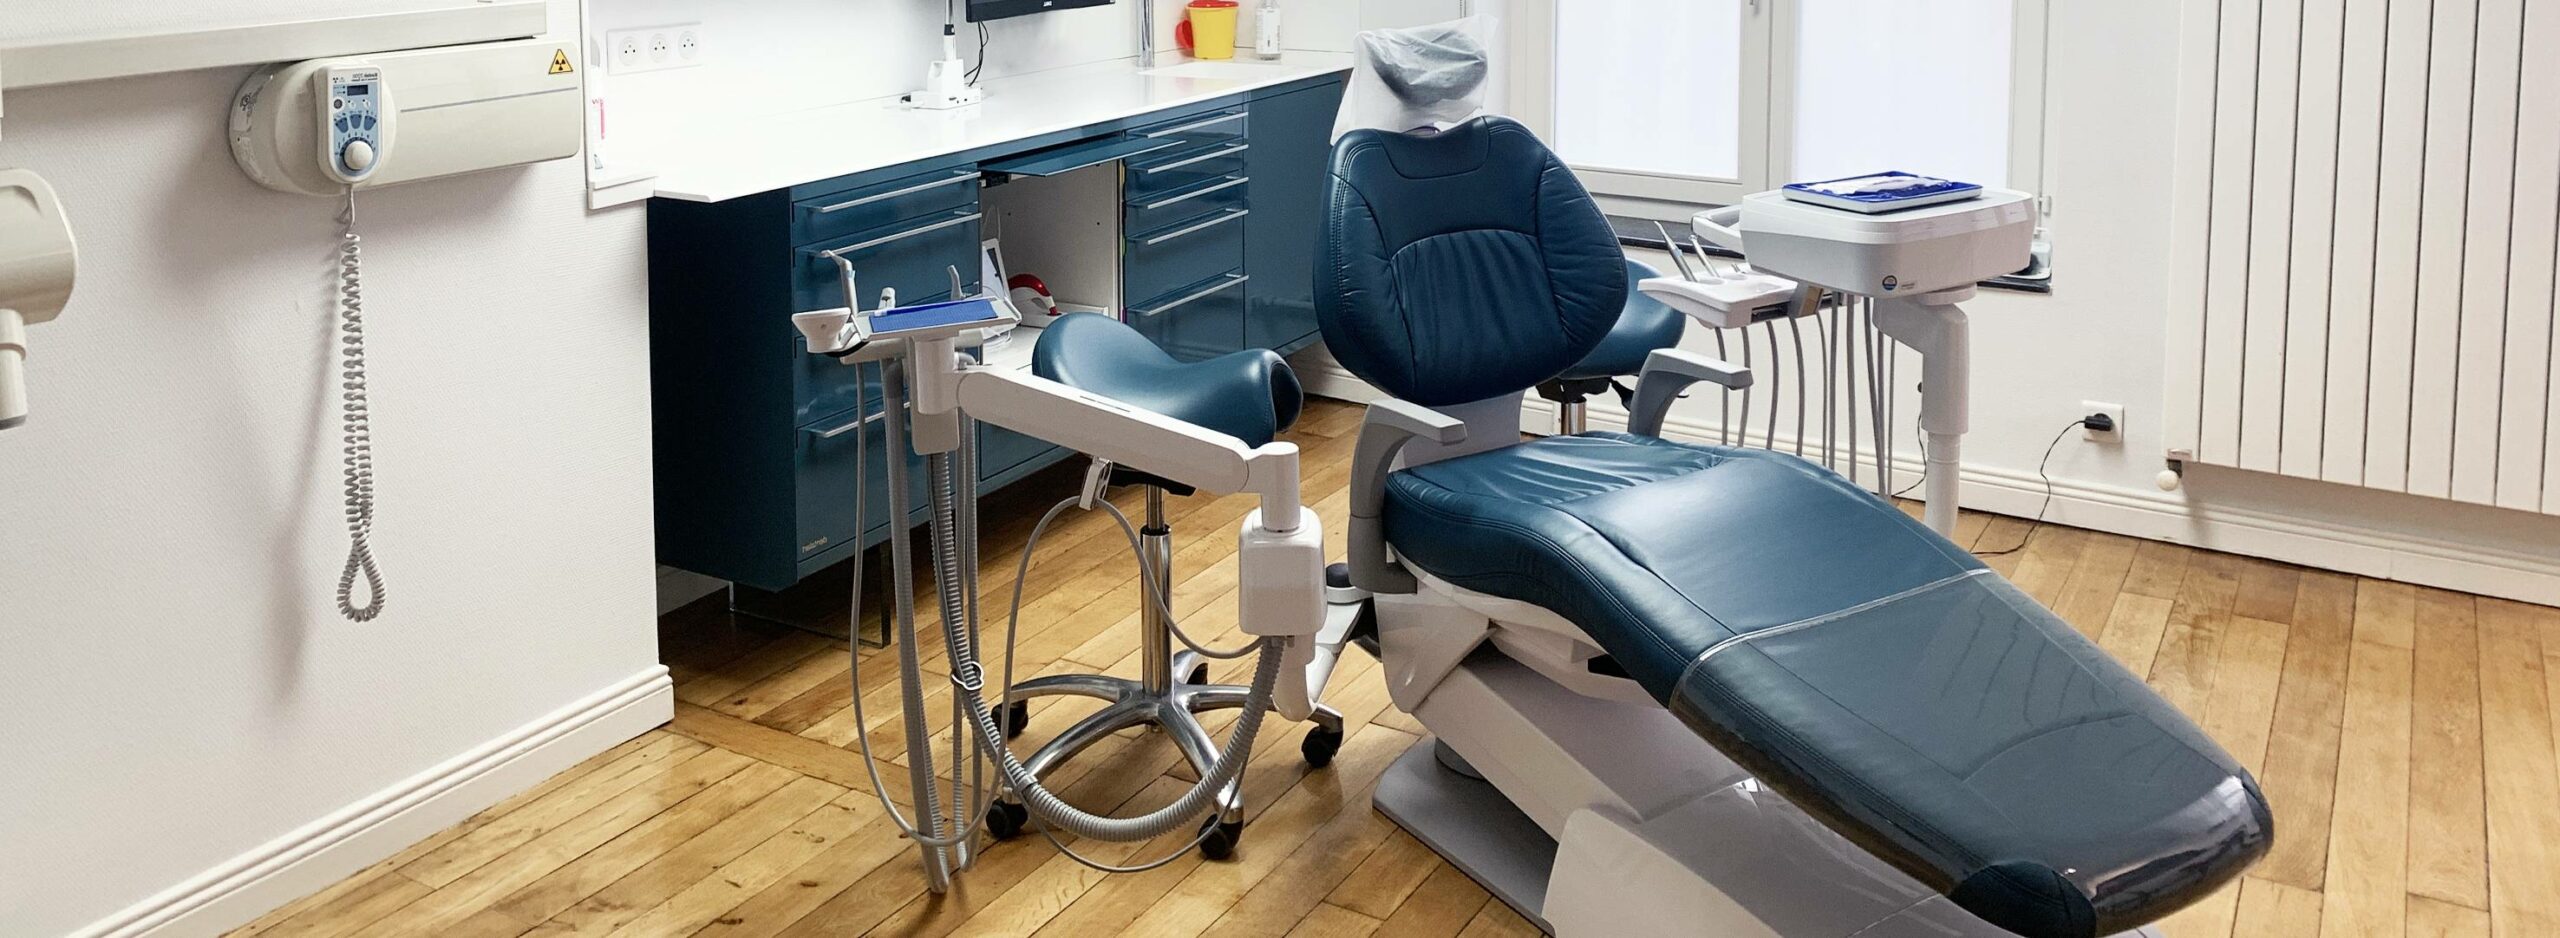 Un cabinet dentaire <span>consacré à la chirurgie buccale et implantaire.</span>